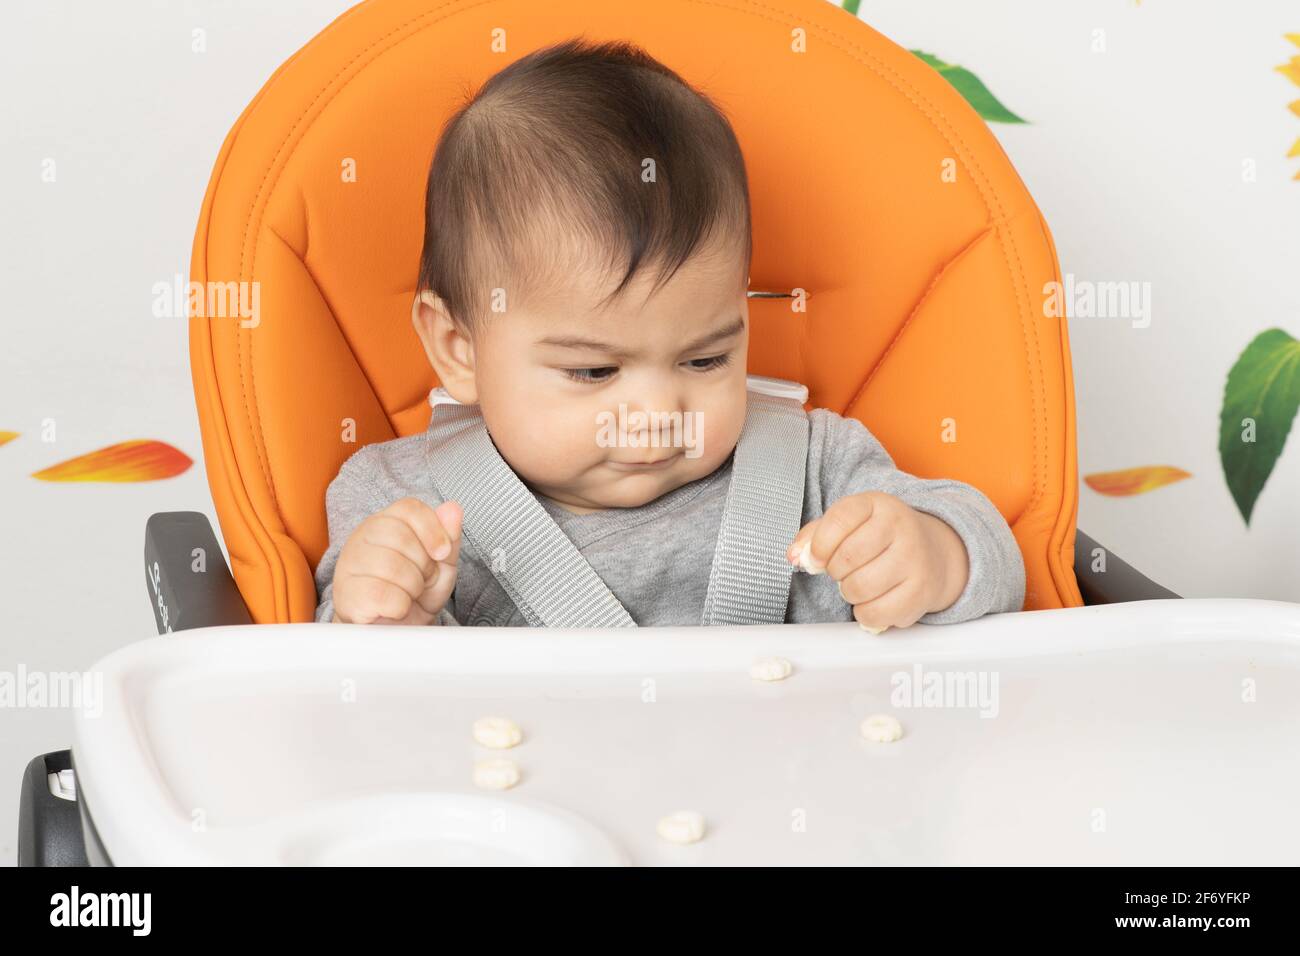 Sechs Monate alter Junge Nahaufnahme, der auf einem Hochstuhl sitzt Mit Zangengriff Snacks vom Hochstuhl abholen Fach Stockfoto